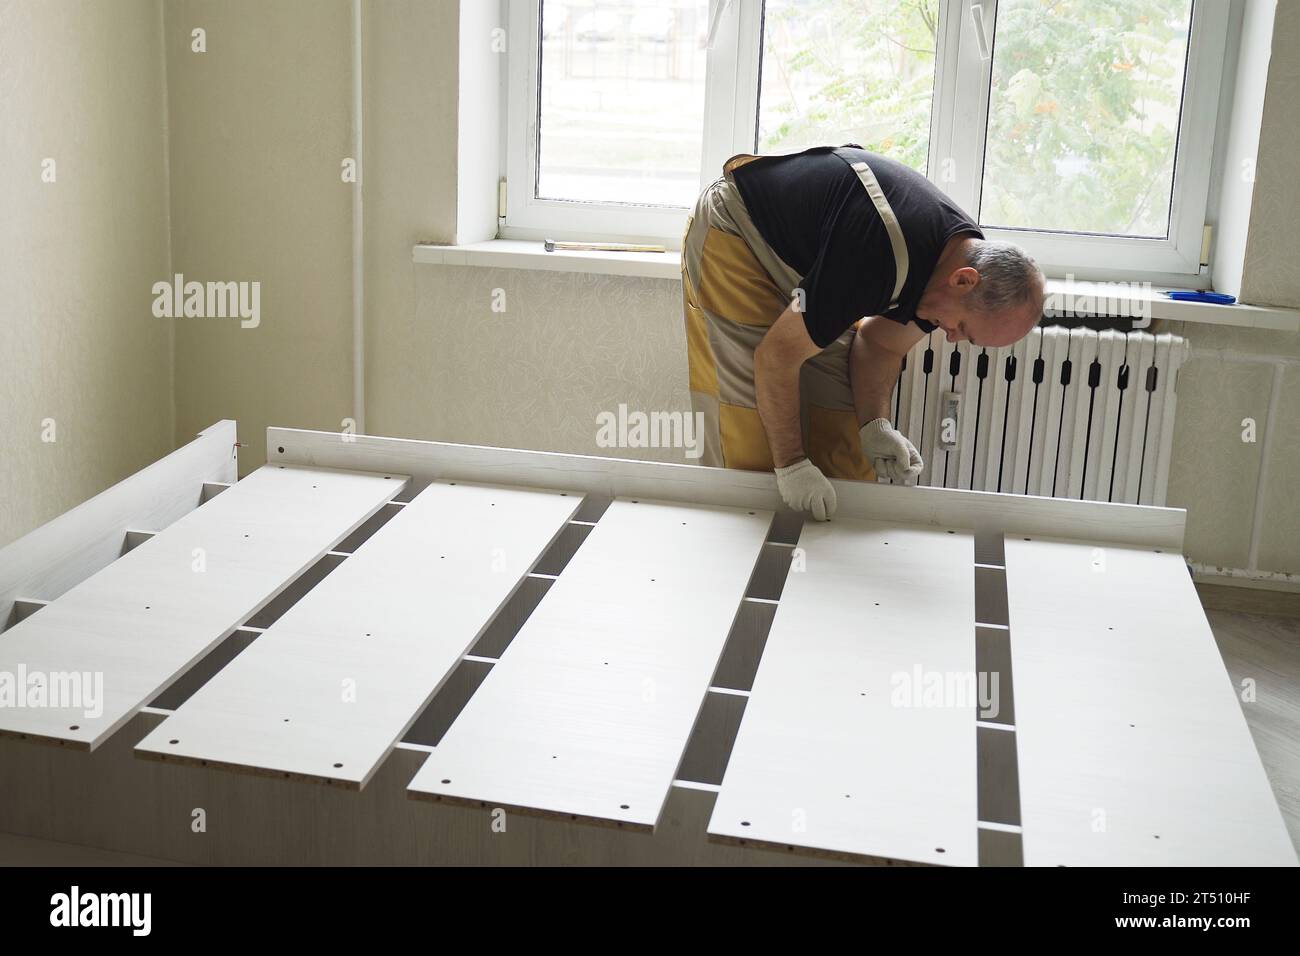 Ein Arbeiter baut Möbel zusammen und verbindet die Teile des Bettes. Möbelmontage. Zeitraffer, beschleunigtes Video. Stockfoto